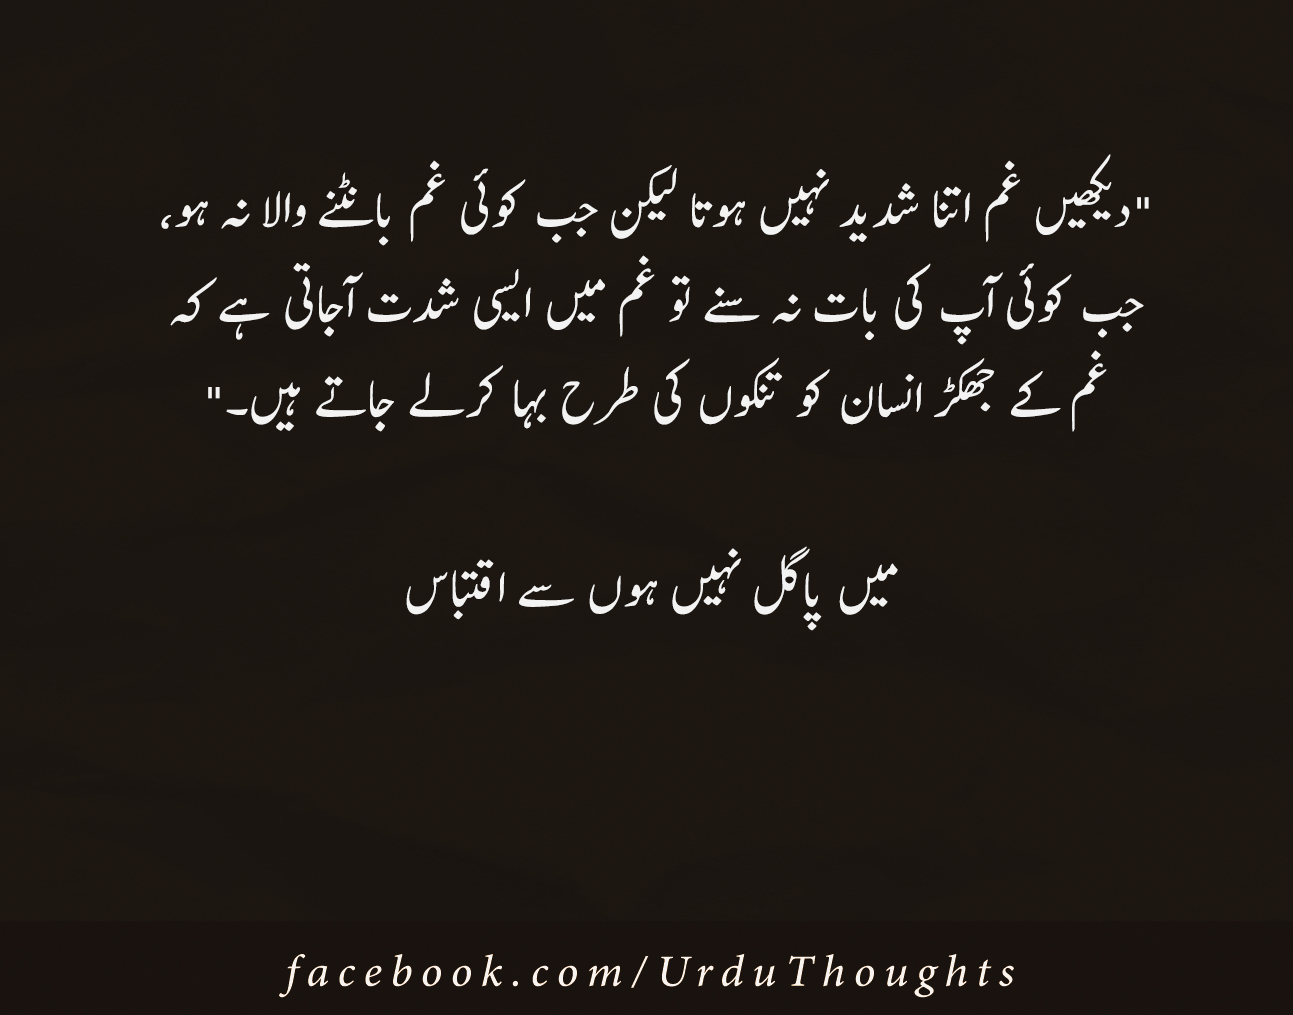 Amazing Urdu Quotes Pics - Facebook Urdu Quotes Images | Poetry in Urdu